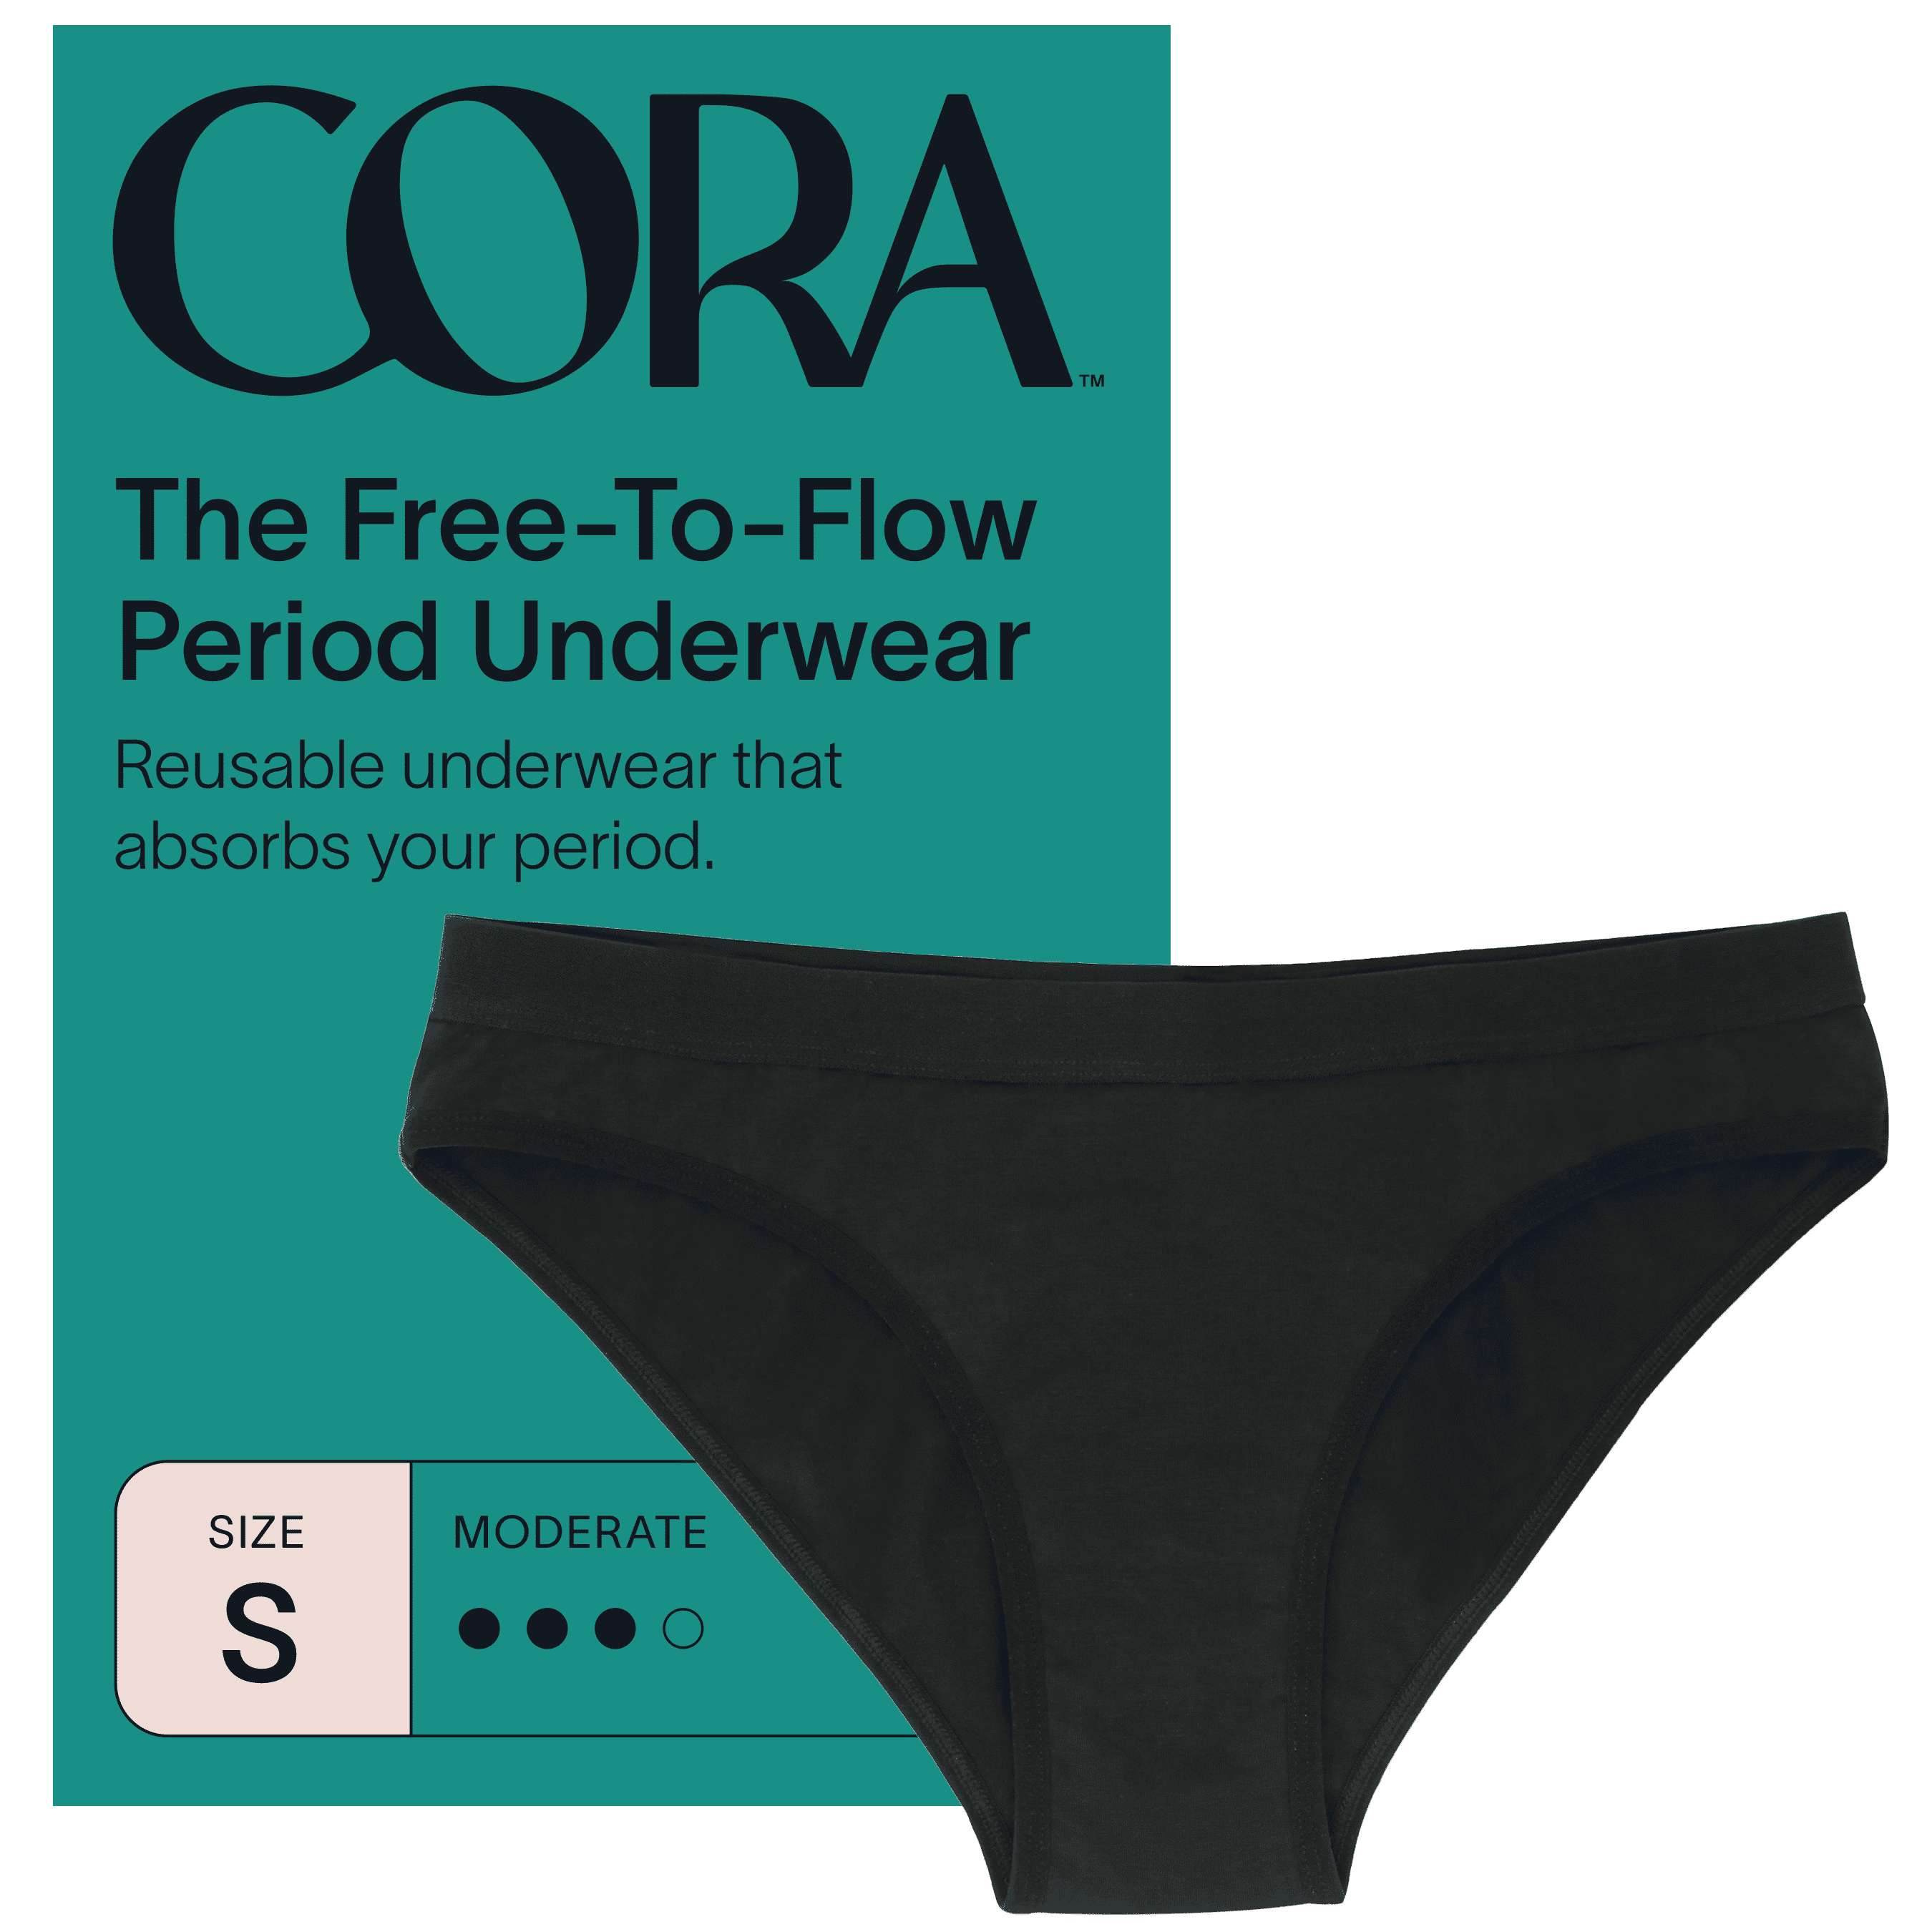 Cora Female Period Underwear, Black, Oeko Tex Certified Material